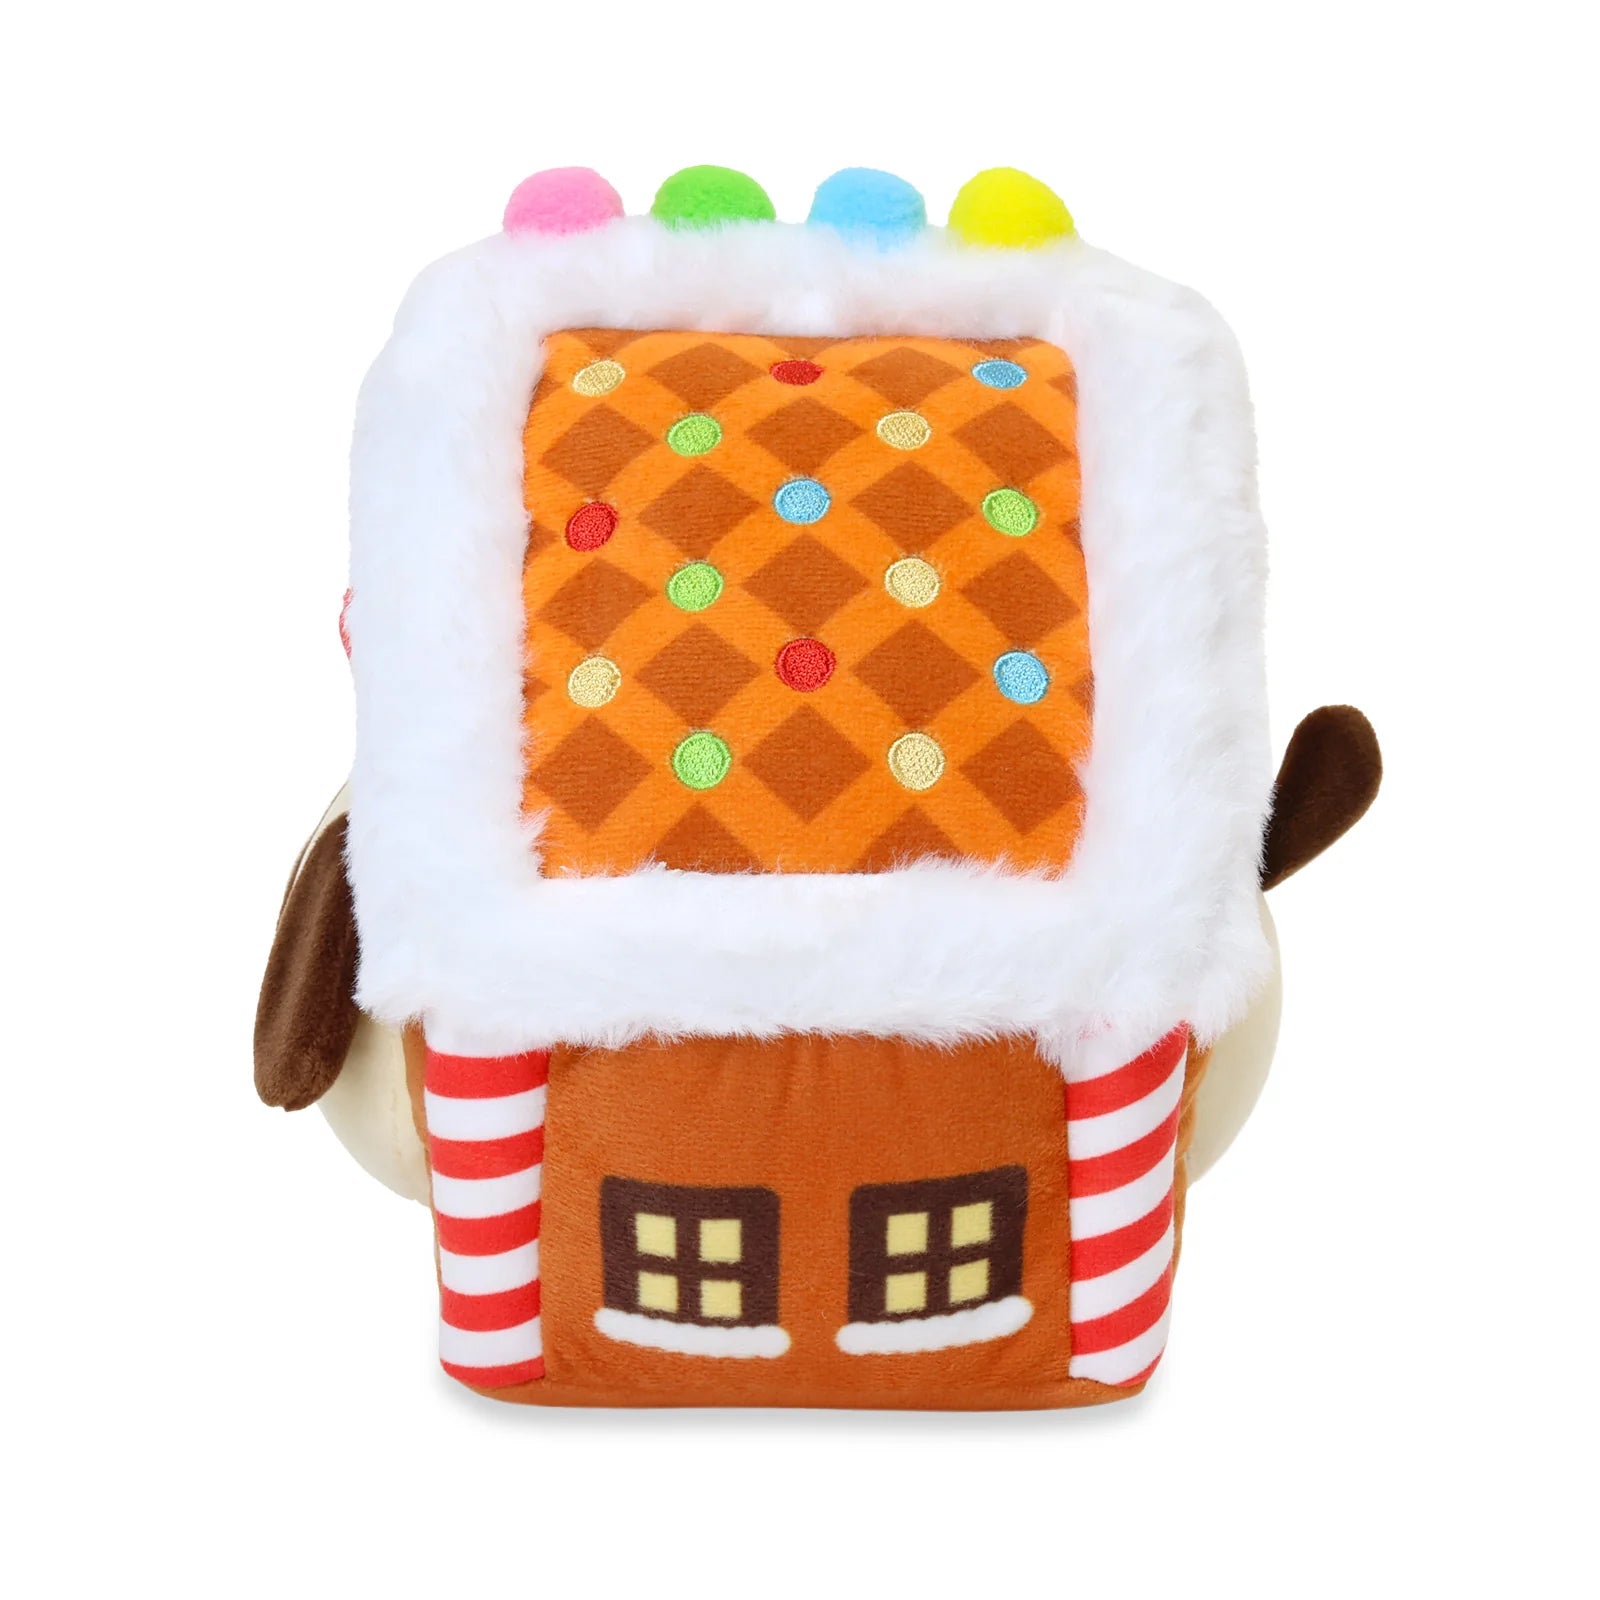 Bum Bumz Gingerbread House Figural 7 Inch Plush - Yahoo Shopping